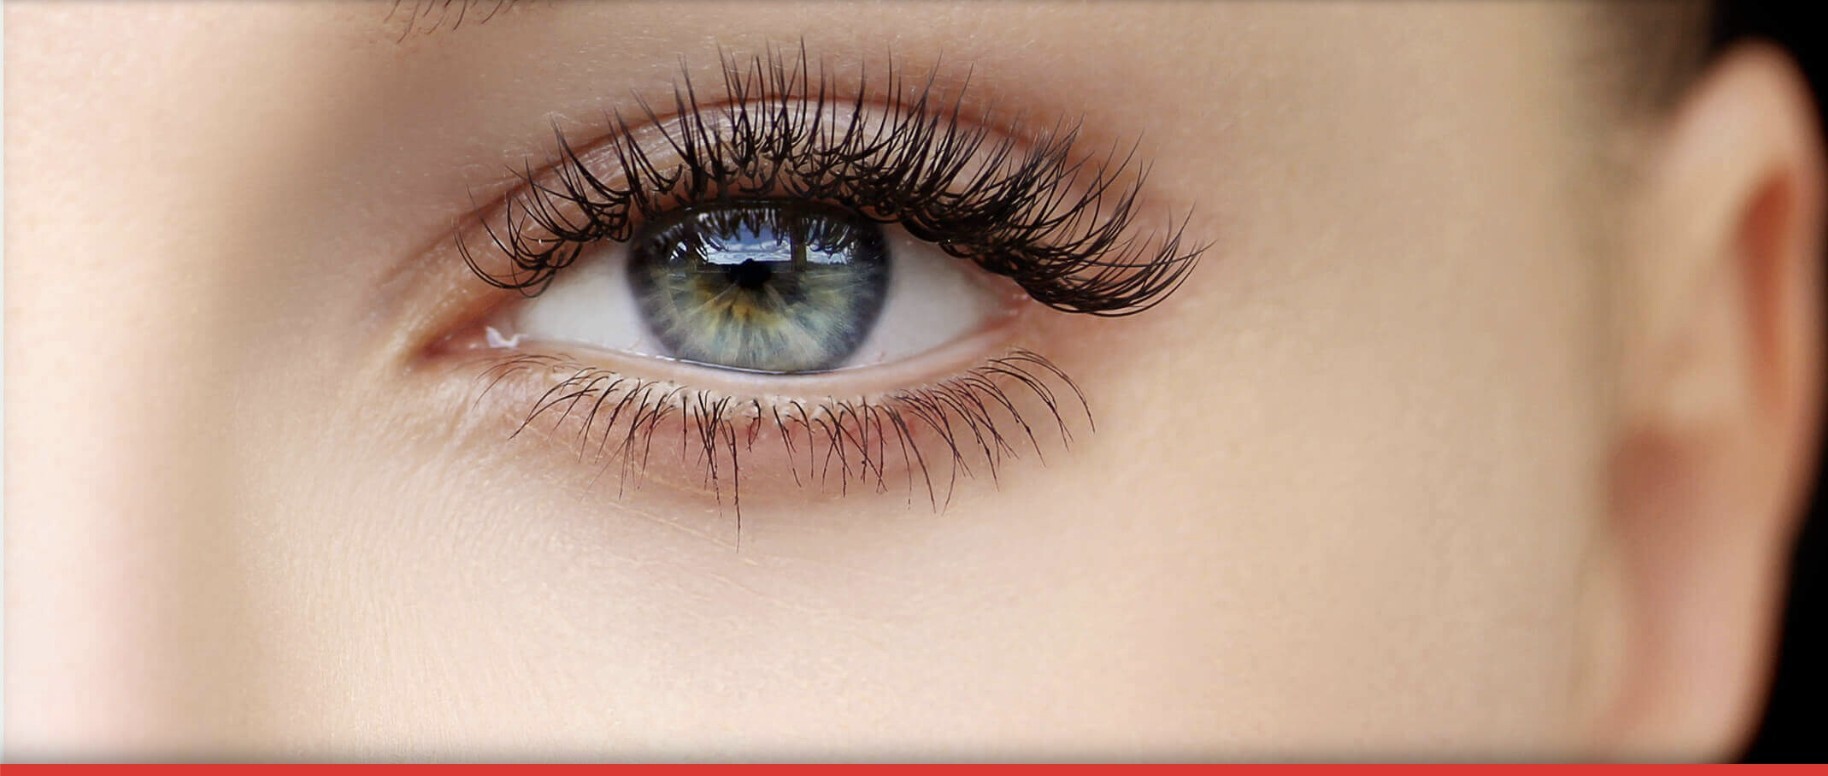 Fotona Smooth Eye - Laserbehandling som reduserer aldringstegn i øyepartiet.